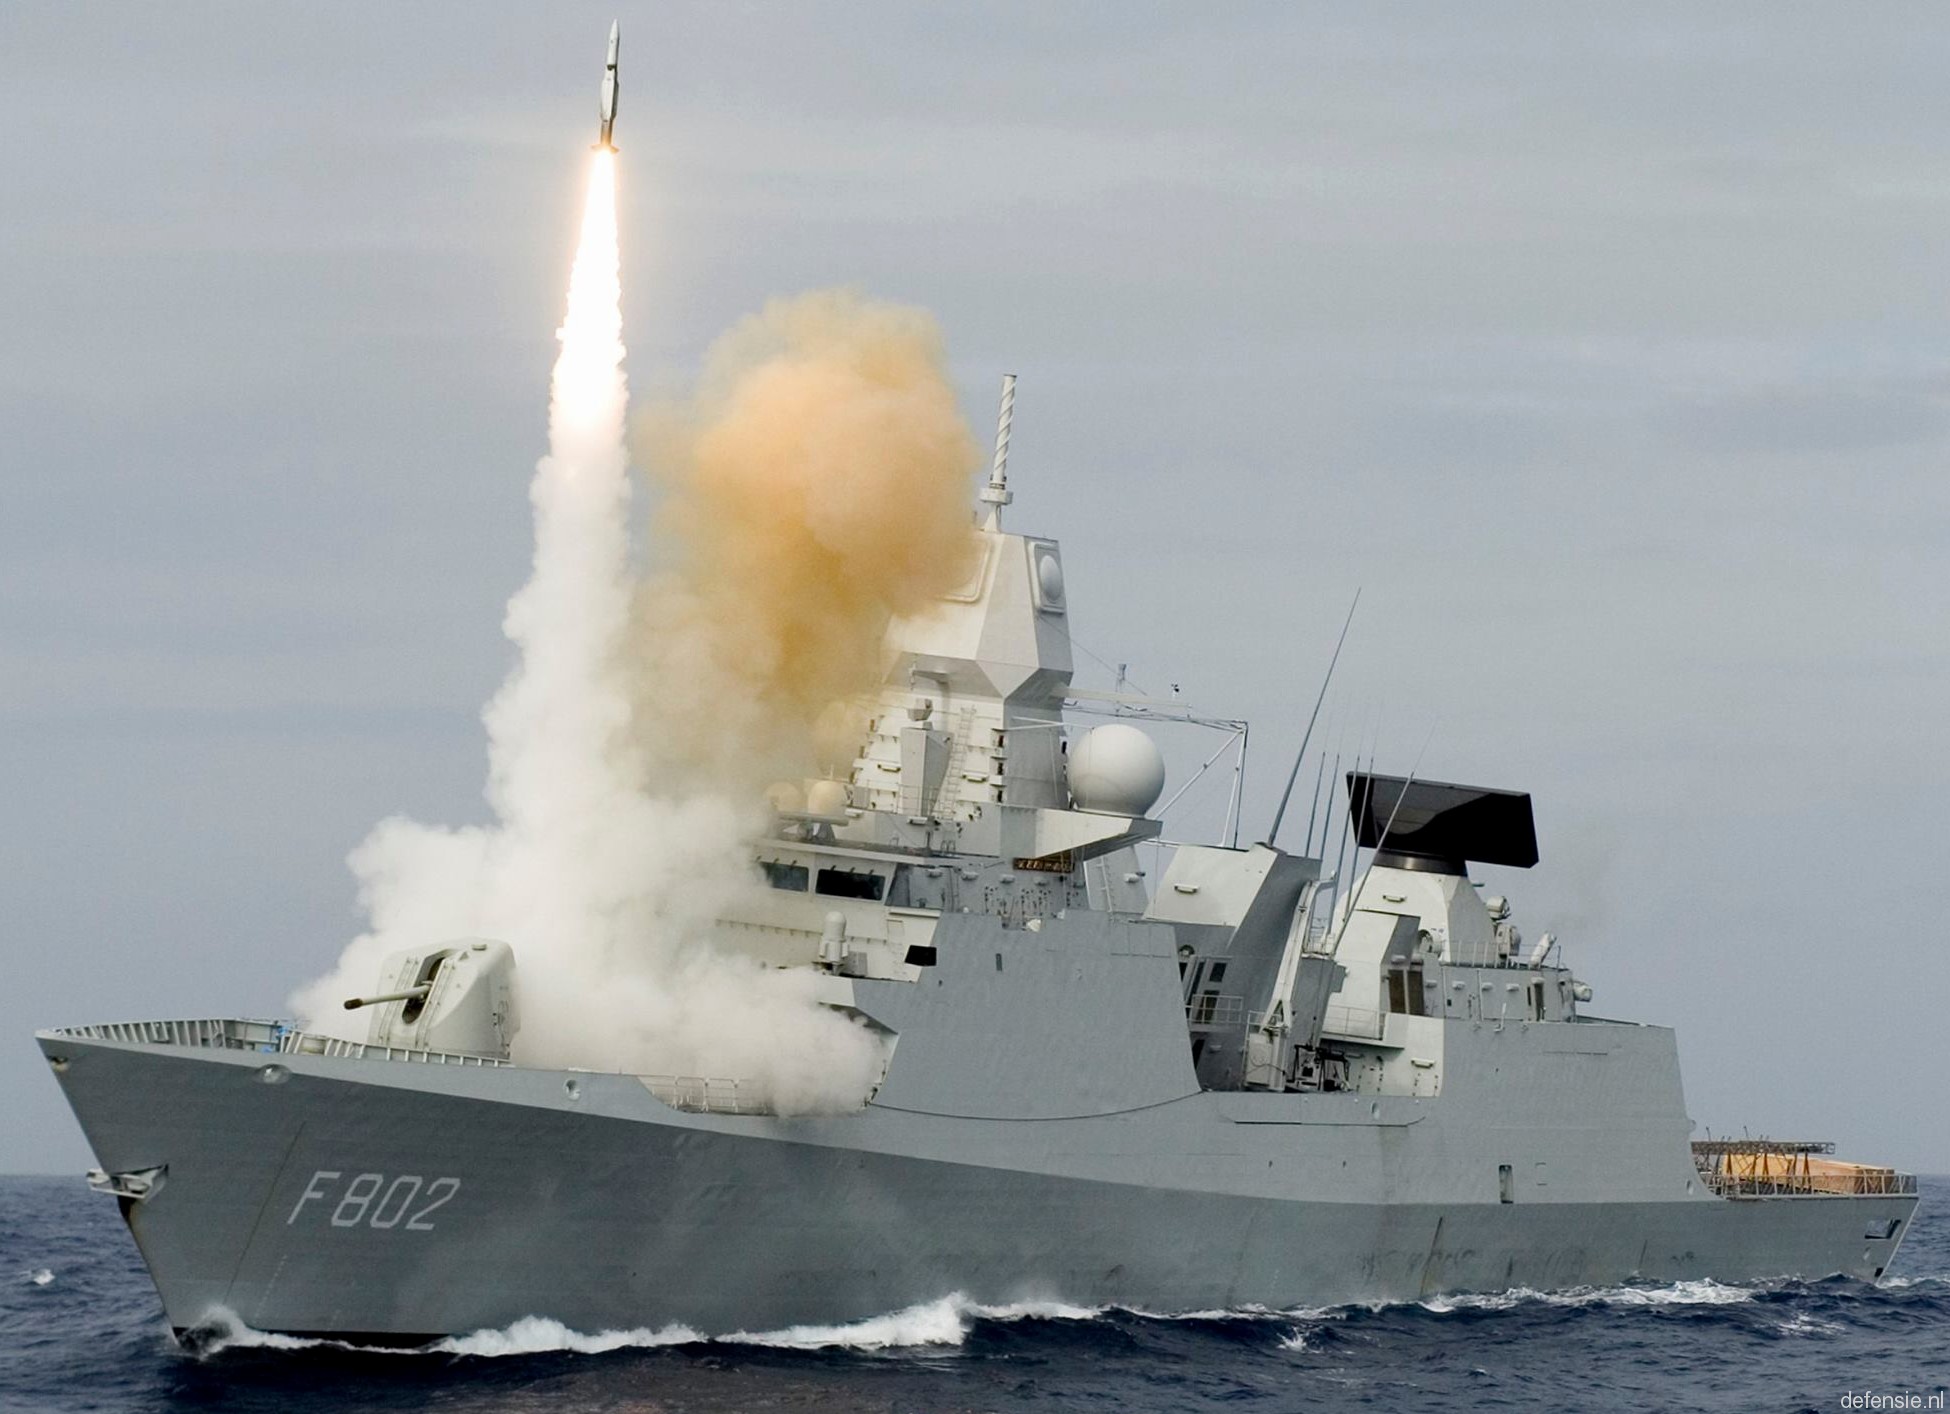 f-802 hnlms de zeven provincien guided missile frigate ffg royal netherlands navy 08 standard sm-2mr rim-66